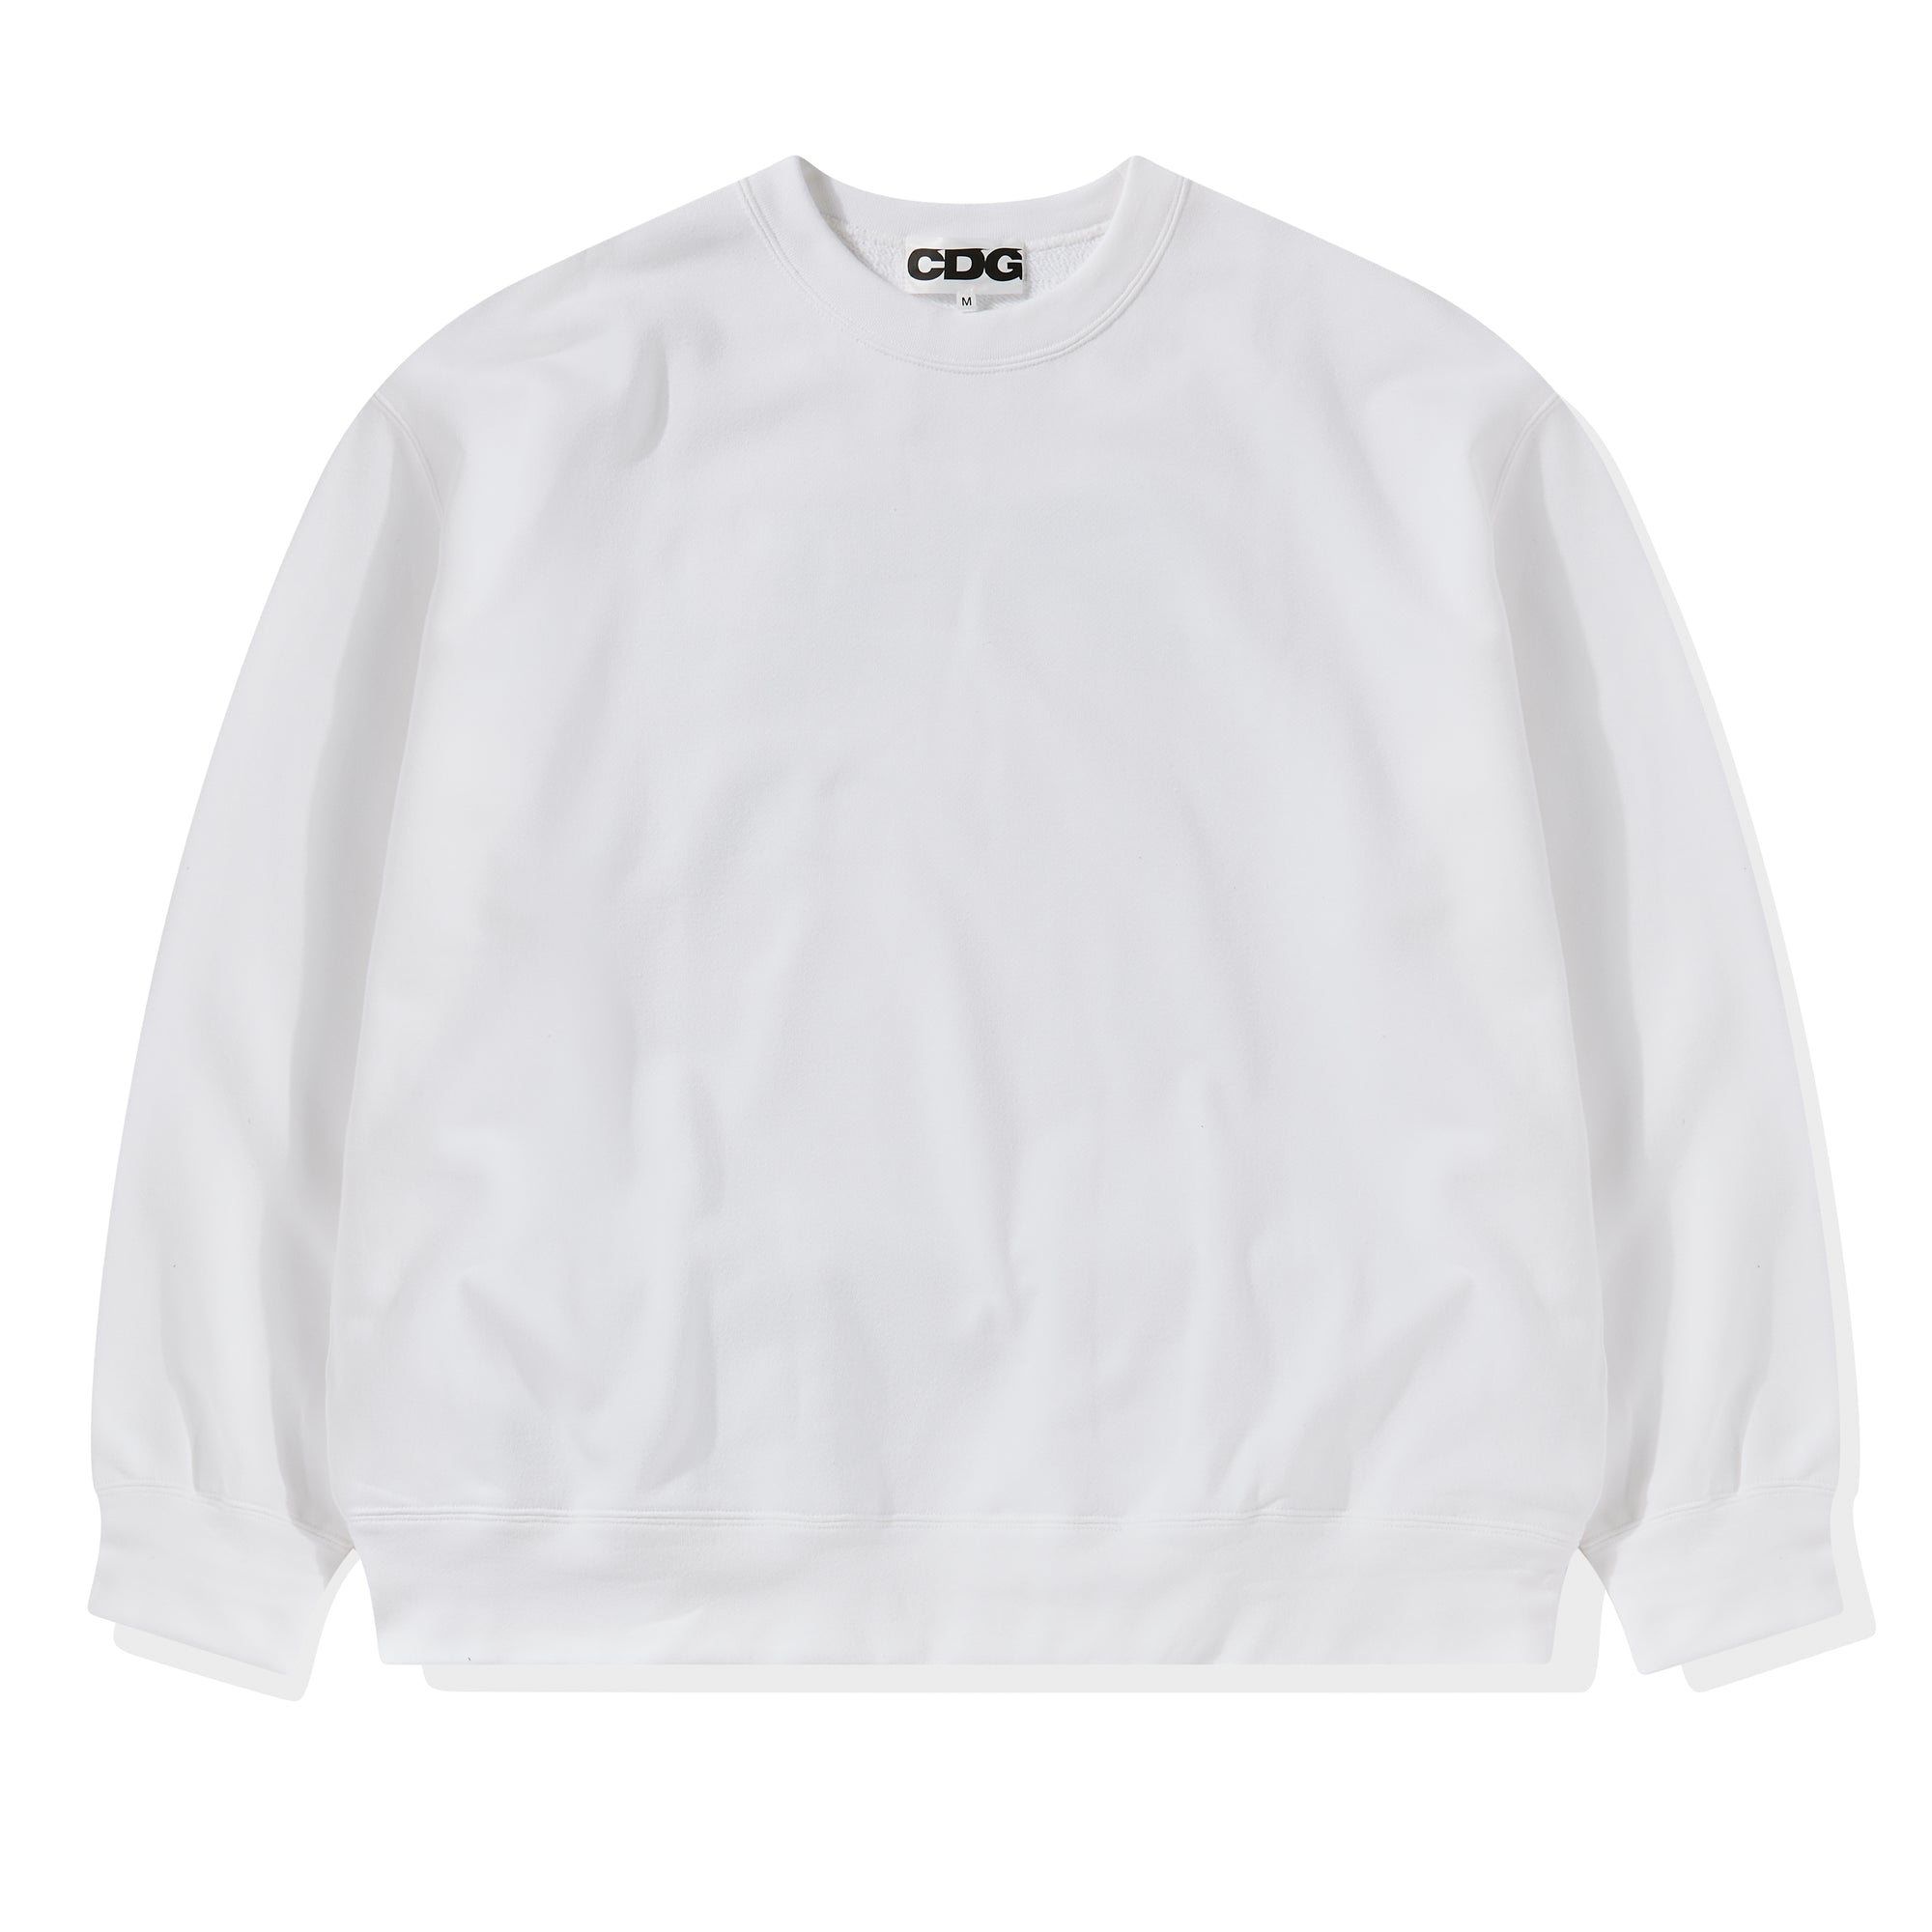 CDG - Oversized Sweatshirt - (White) view 2